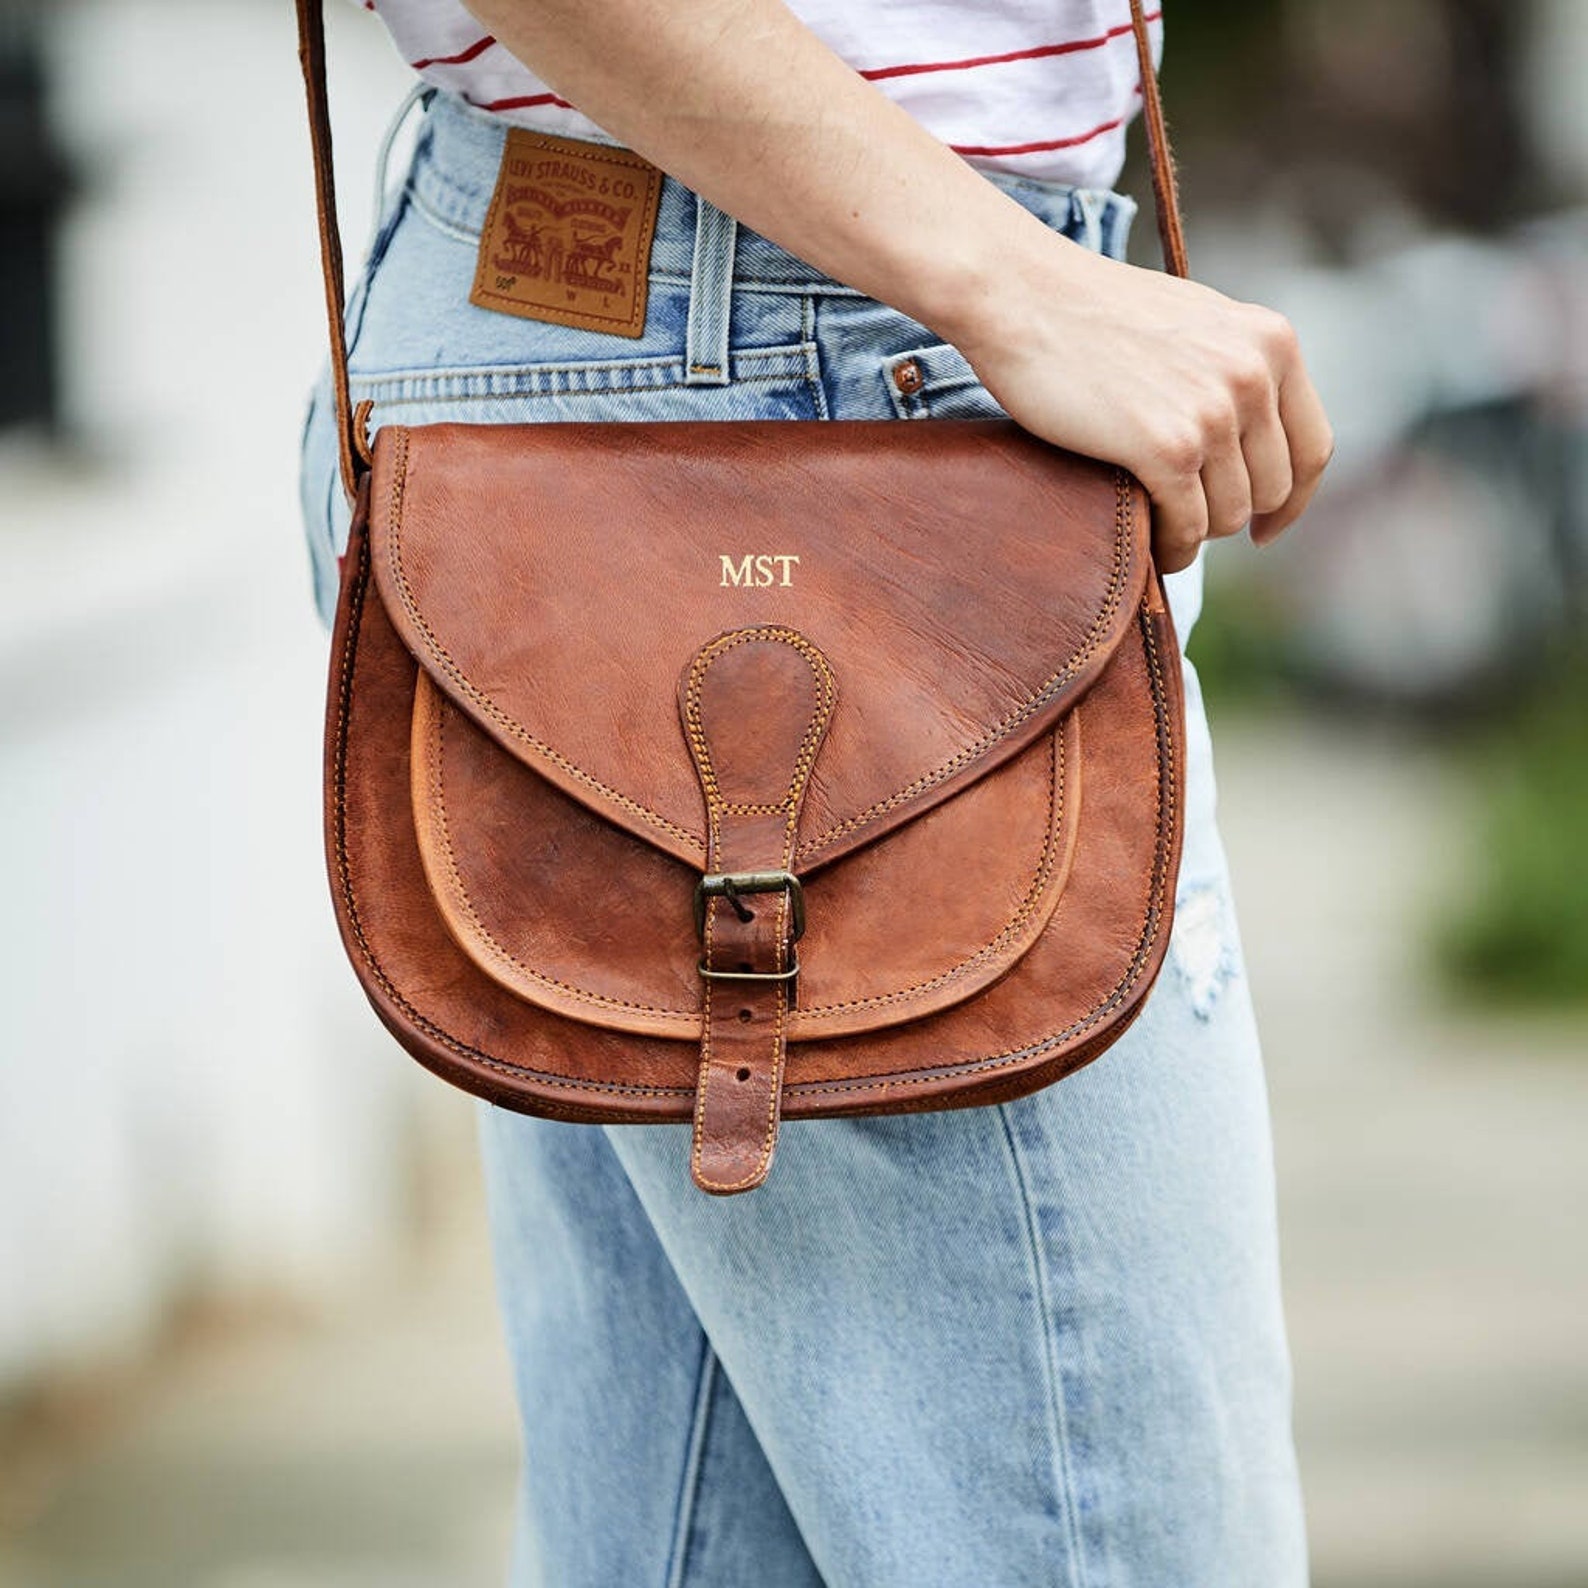 Vintage Leather Saddle Bag With Personalisation - Etsy UK